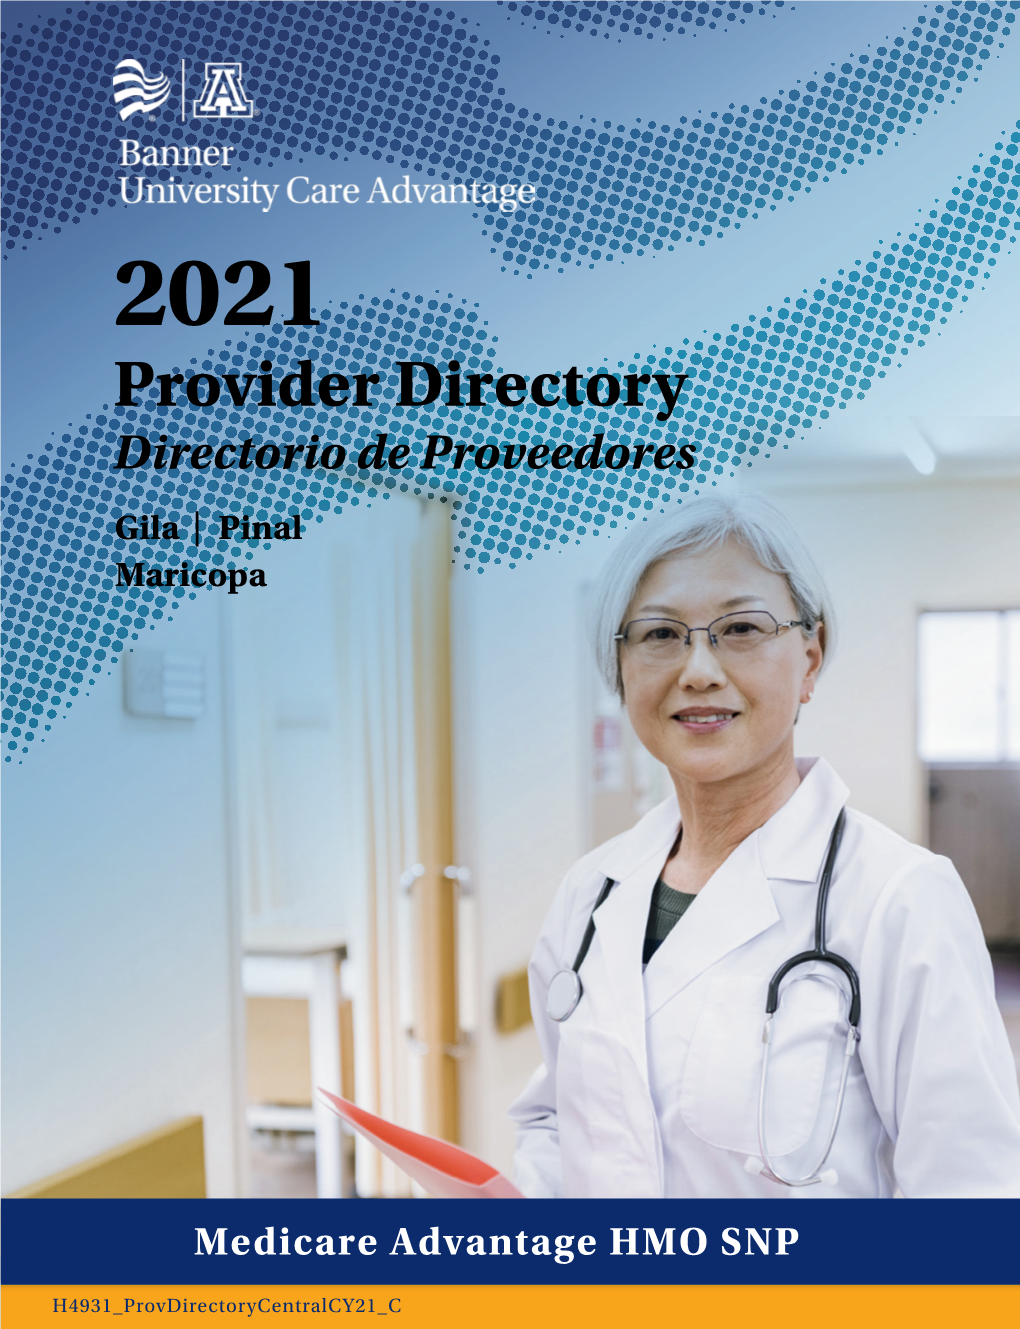 2021 Provider Directory/Directorio De Proveedores